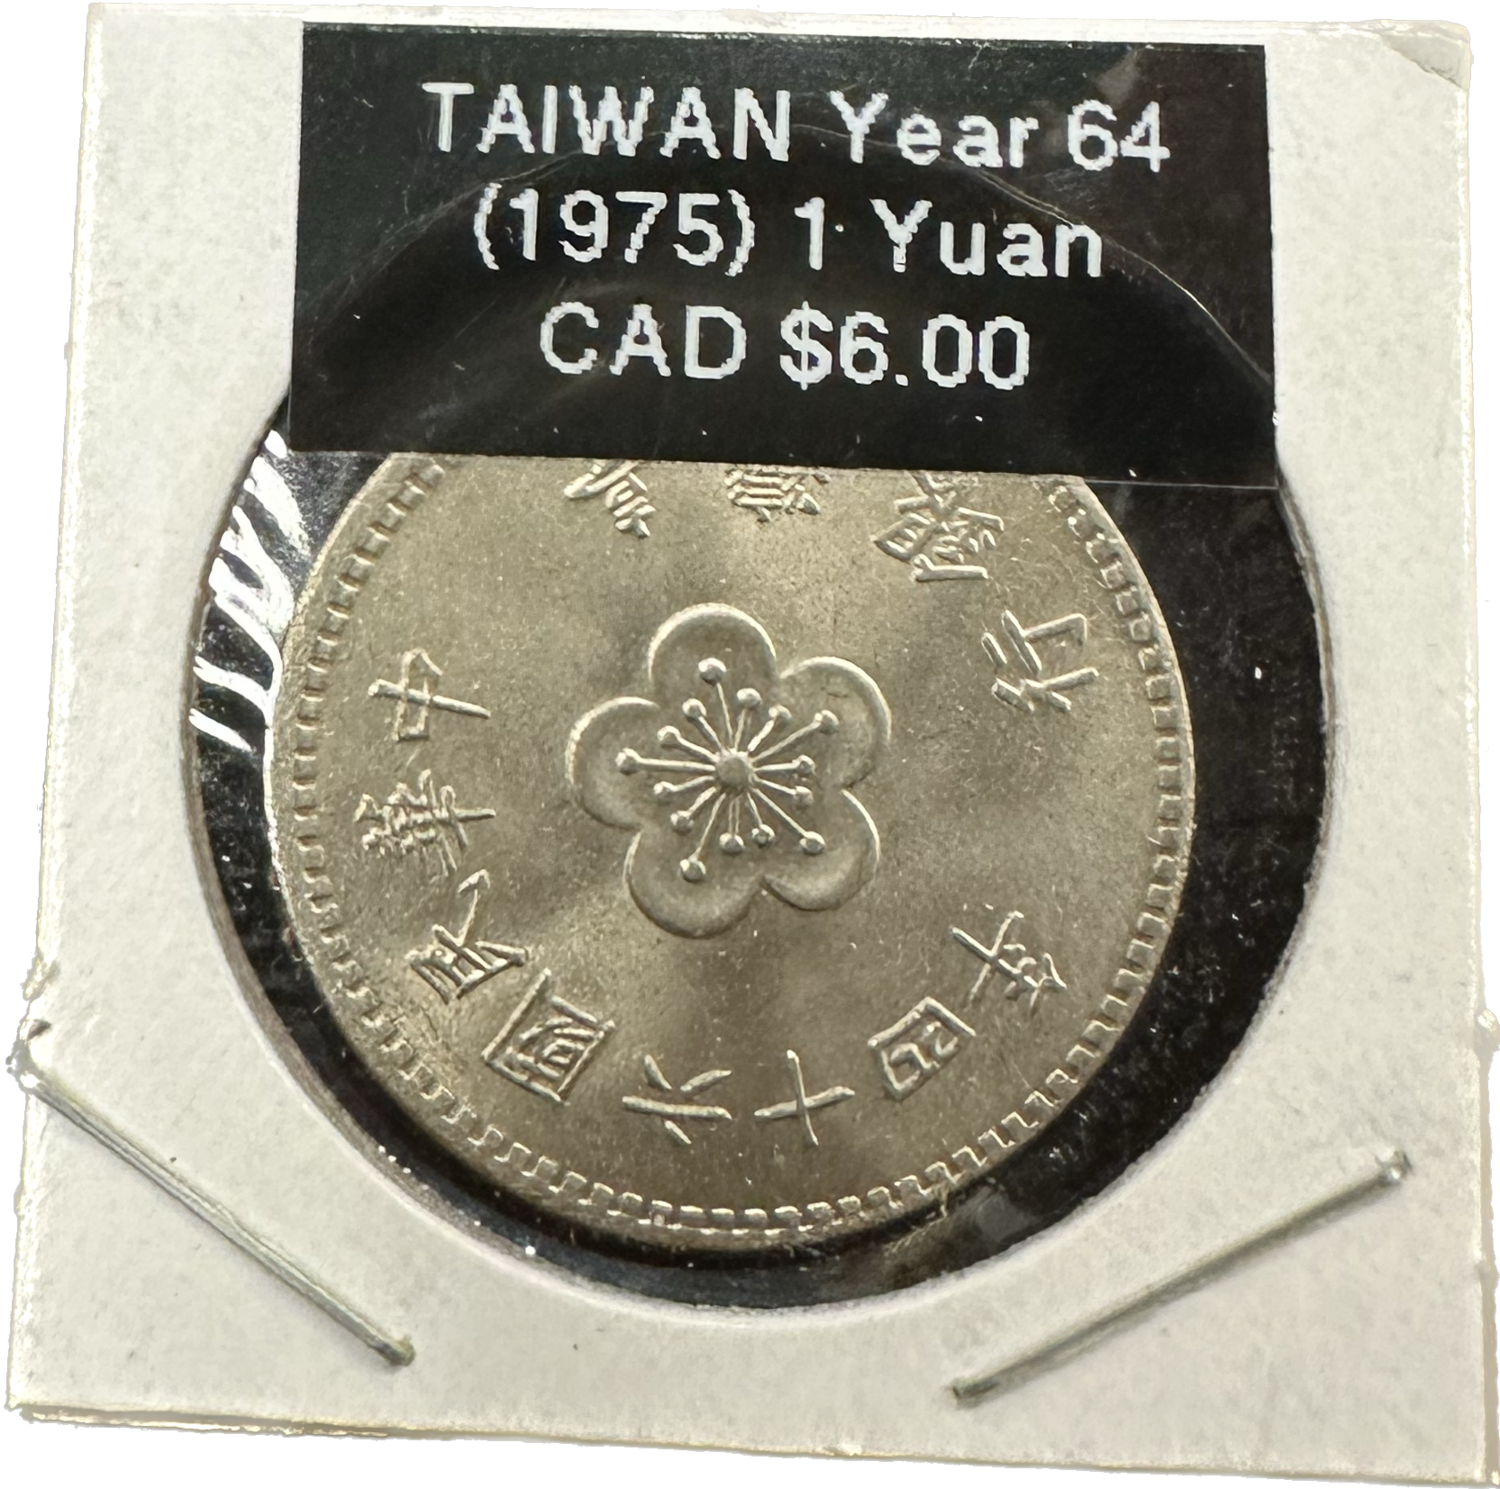 Taiwan 1 Yuan 1975 Year 64 Coin